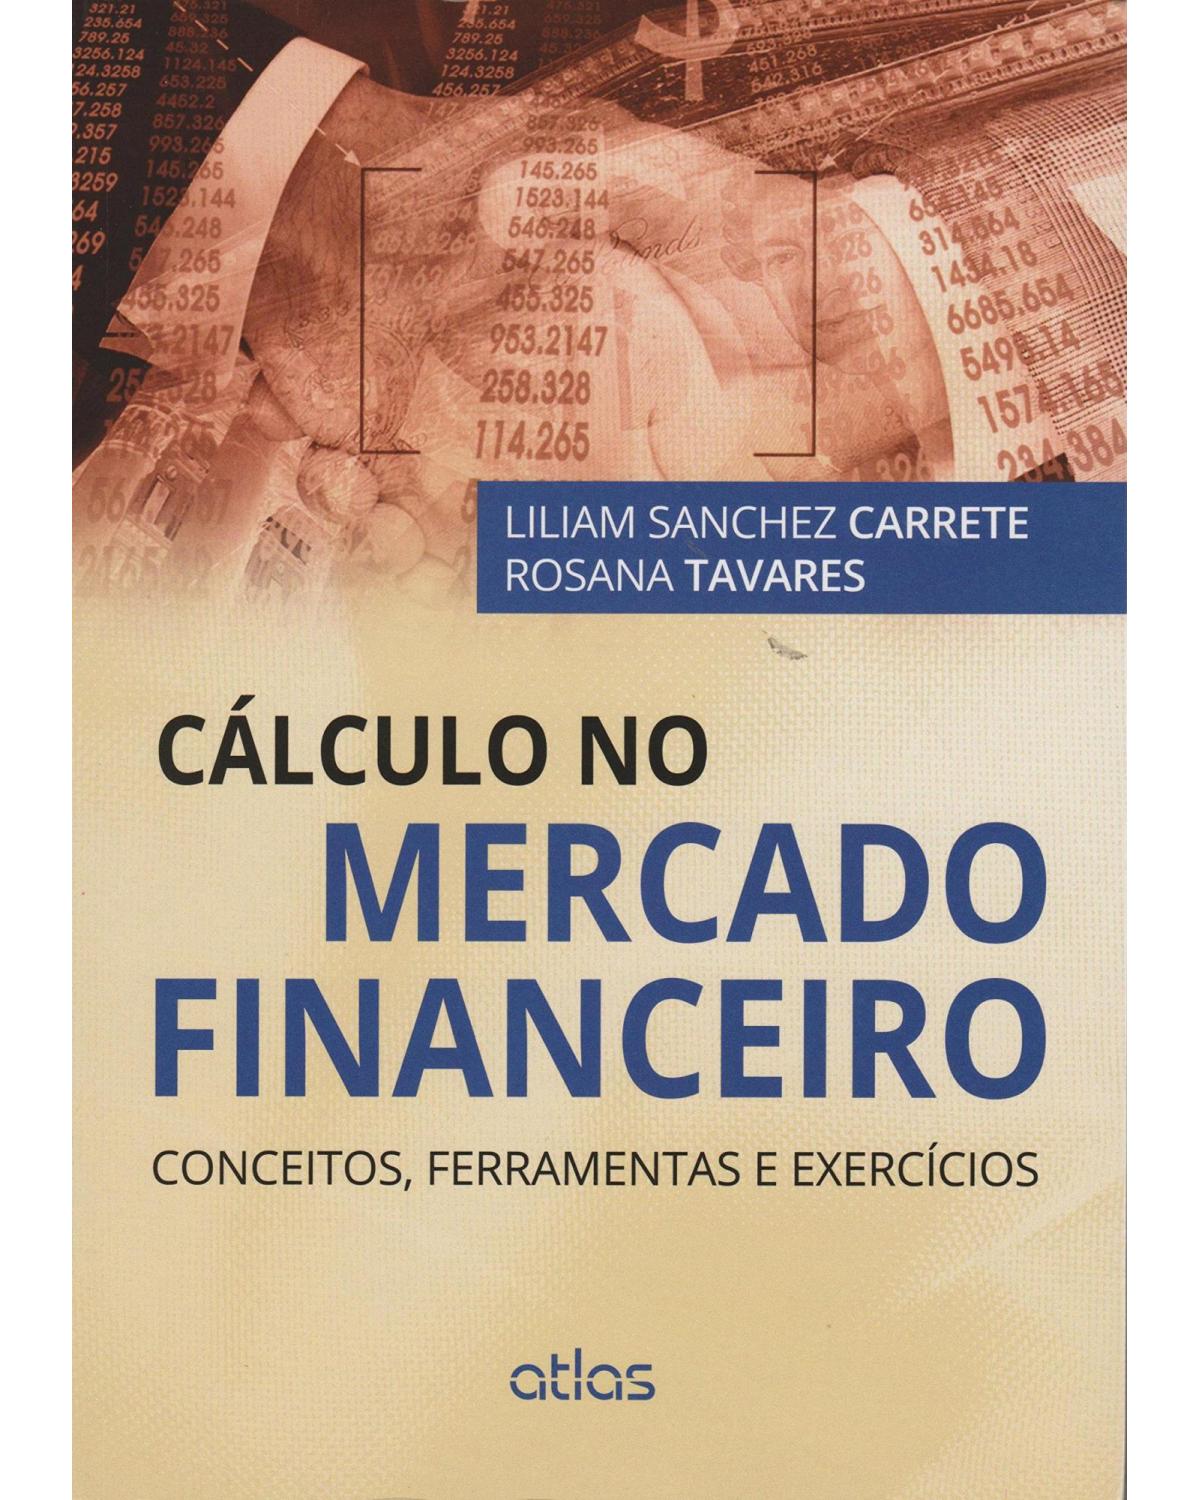 Cálculo no mercado financeiro - Conceitos, ferramentas e exercícios - 1ª Edição | 2015